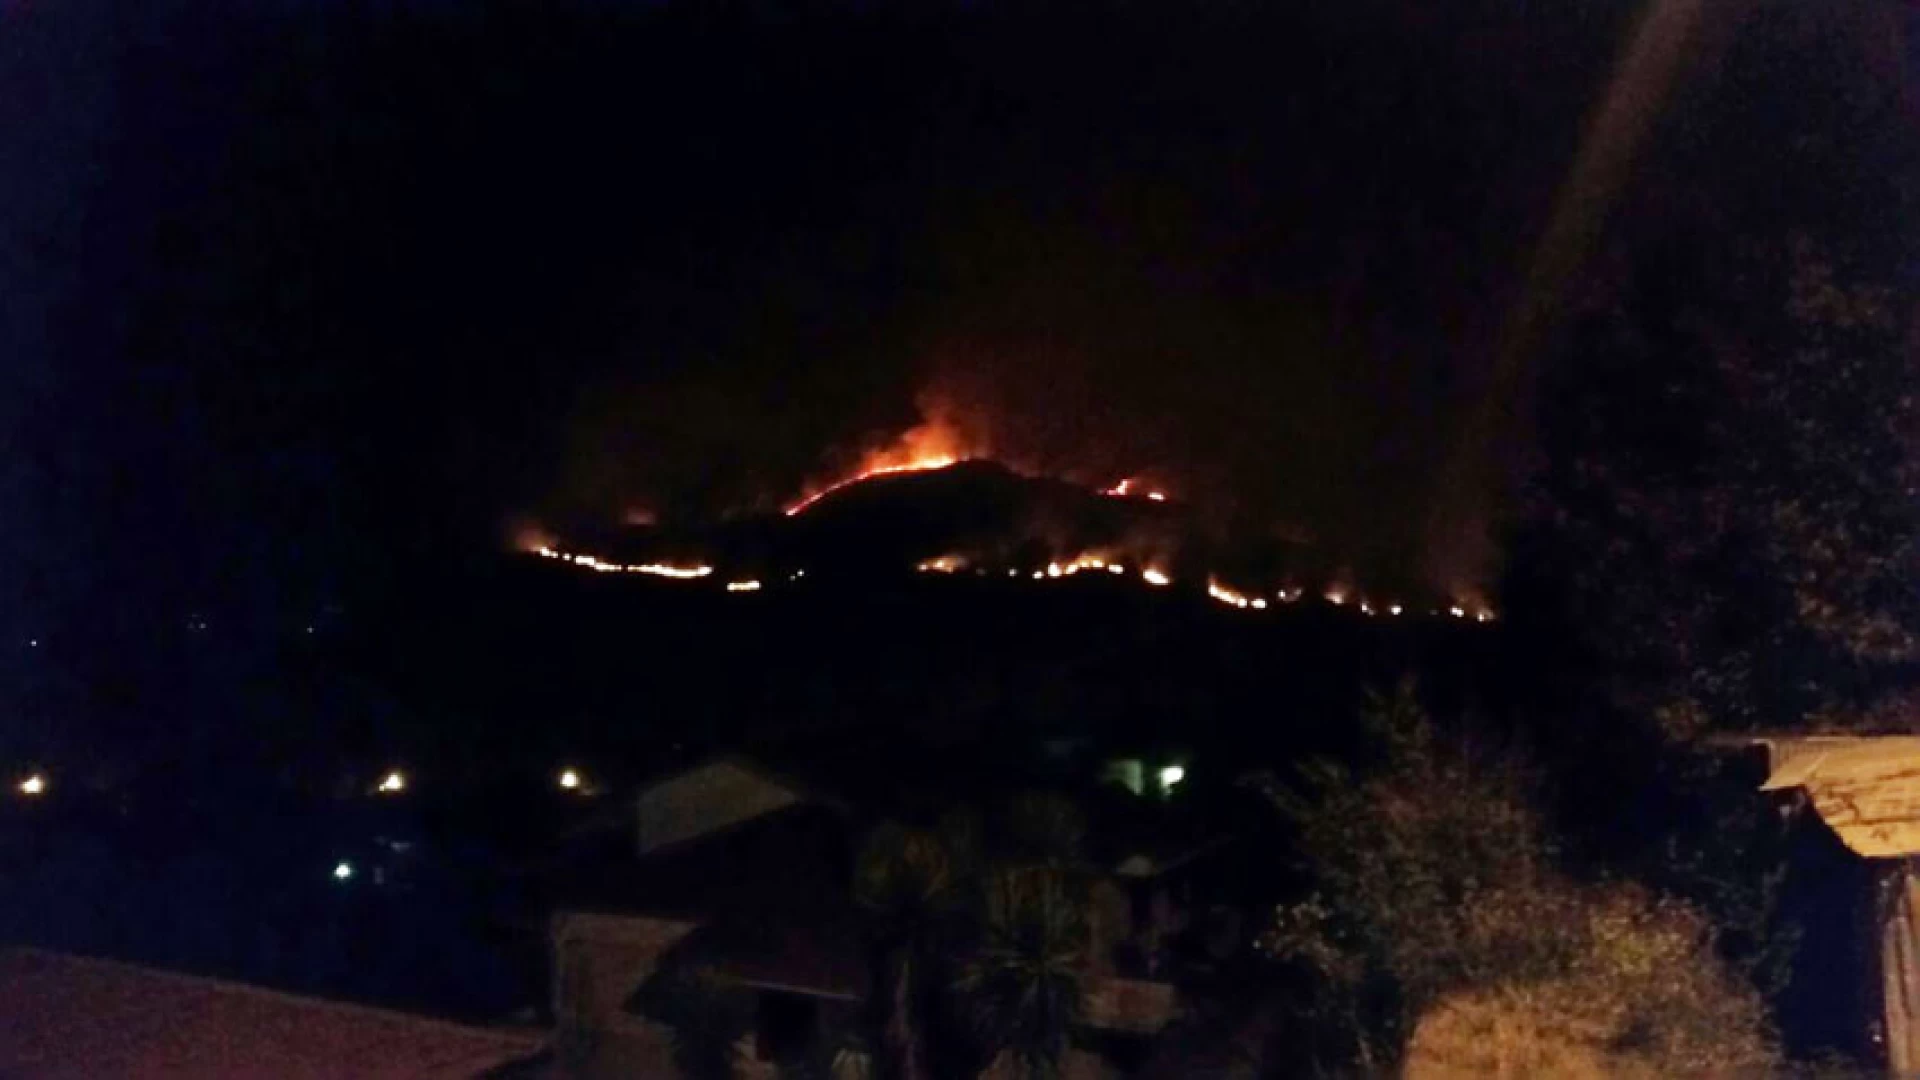 Venafro: va a fuoco il territorio tra Vallecupa e Roccapipirozzi al confine con Monte Cesima. Incredibile dispiegamento di forze per “combattere” le fiamme.